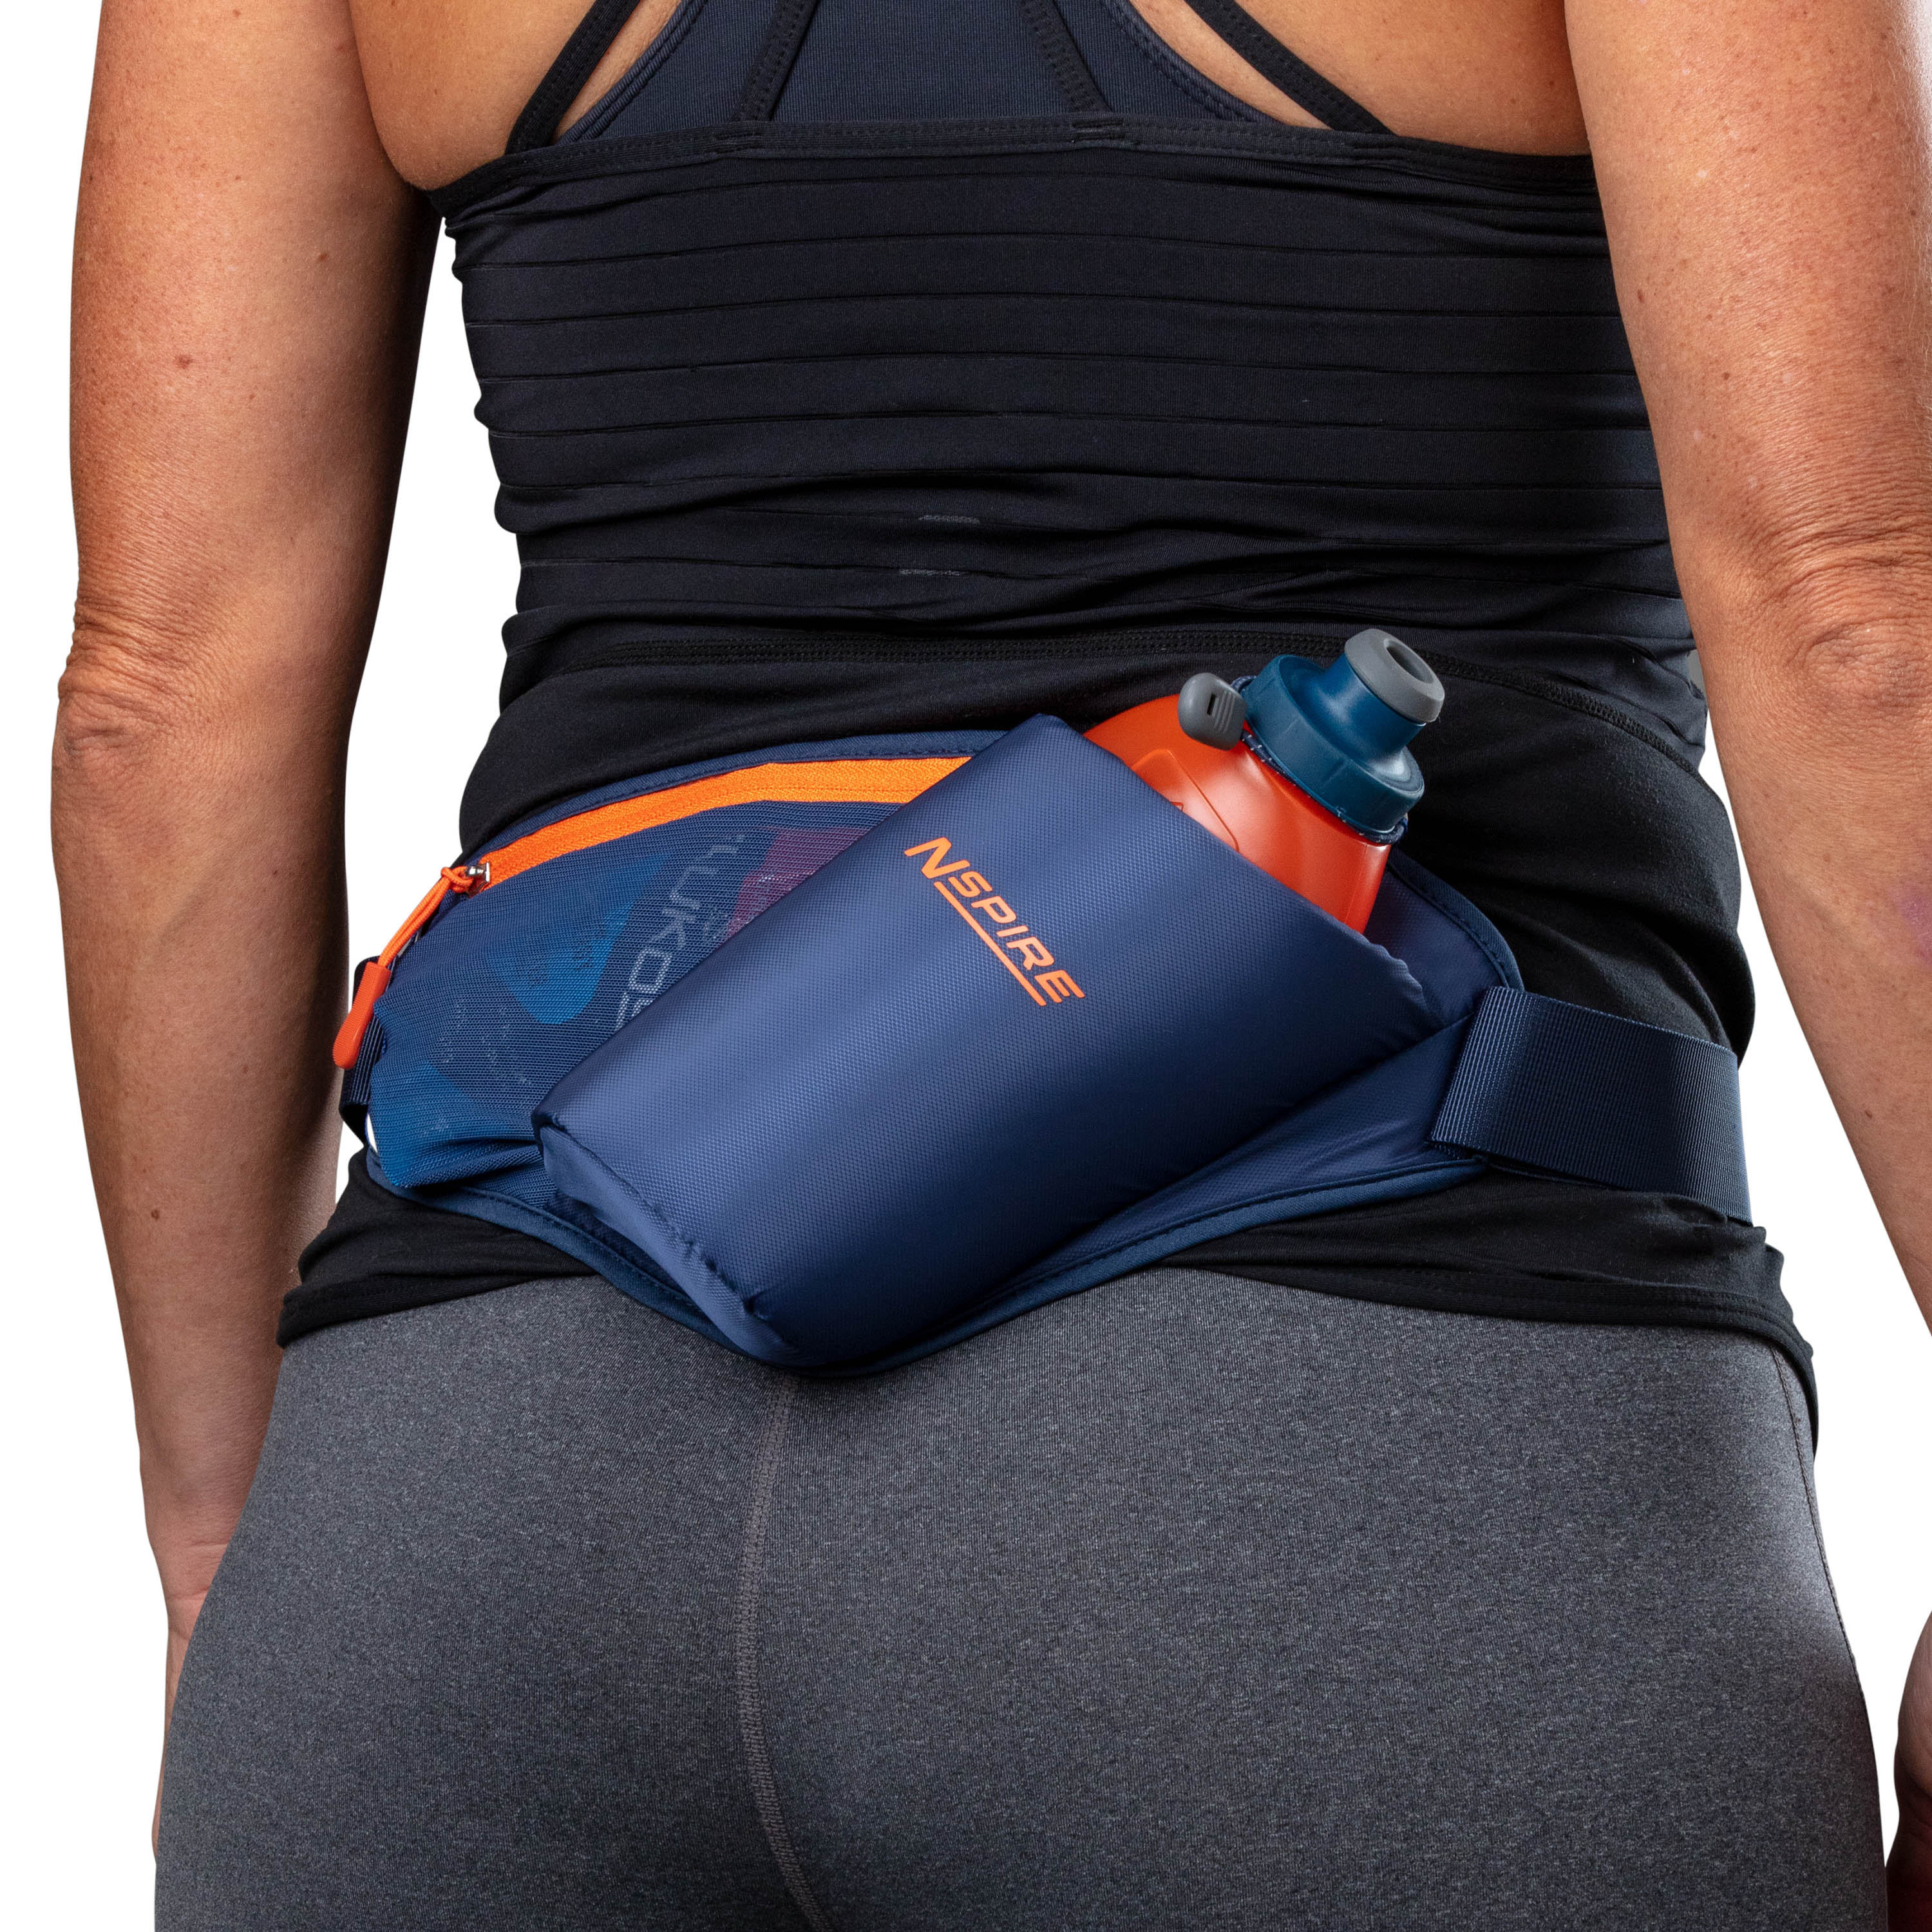 Nspire by Nathan Single Bottle Hydration Belt Blue/Orange - image 5 of 13